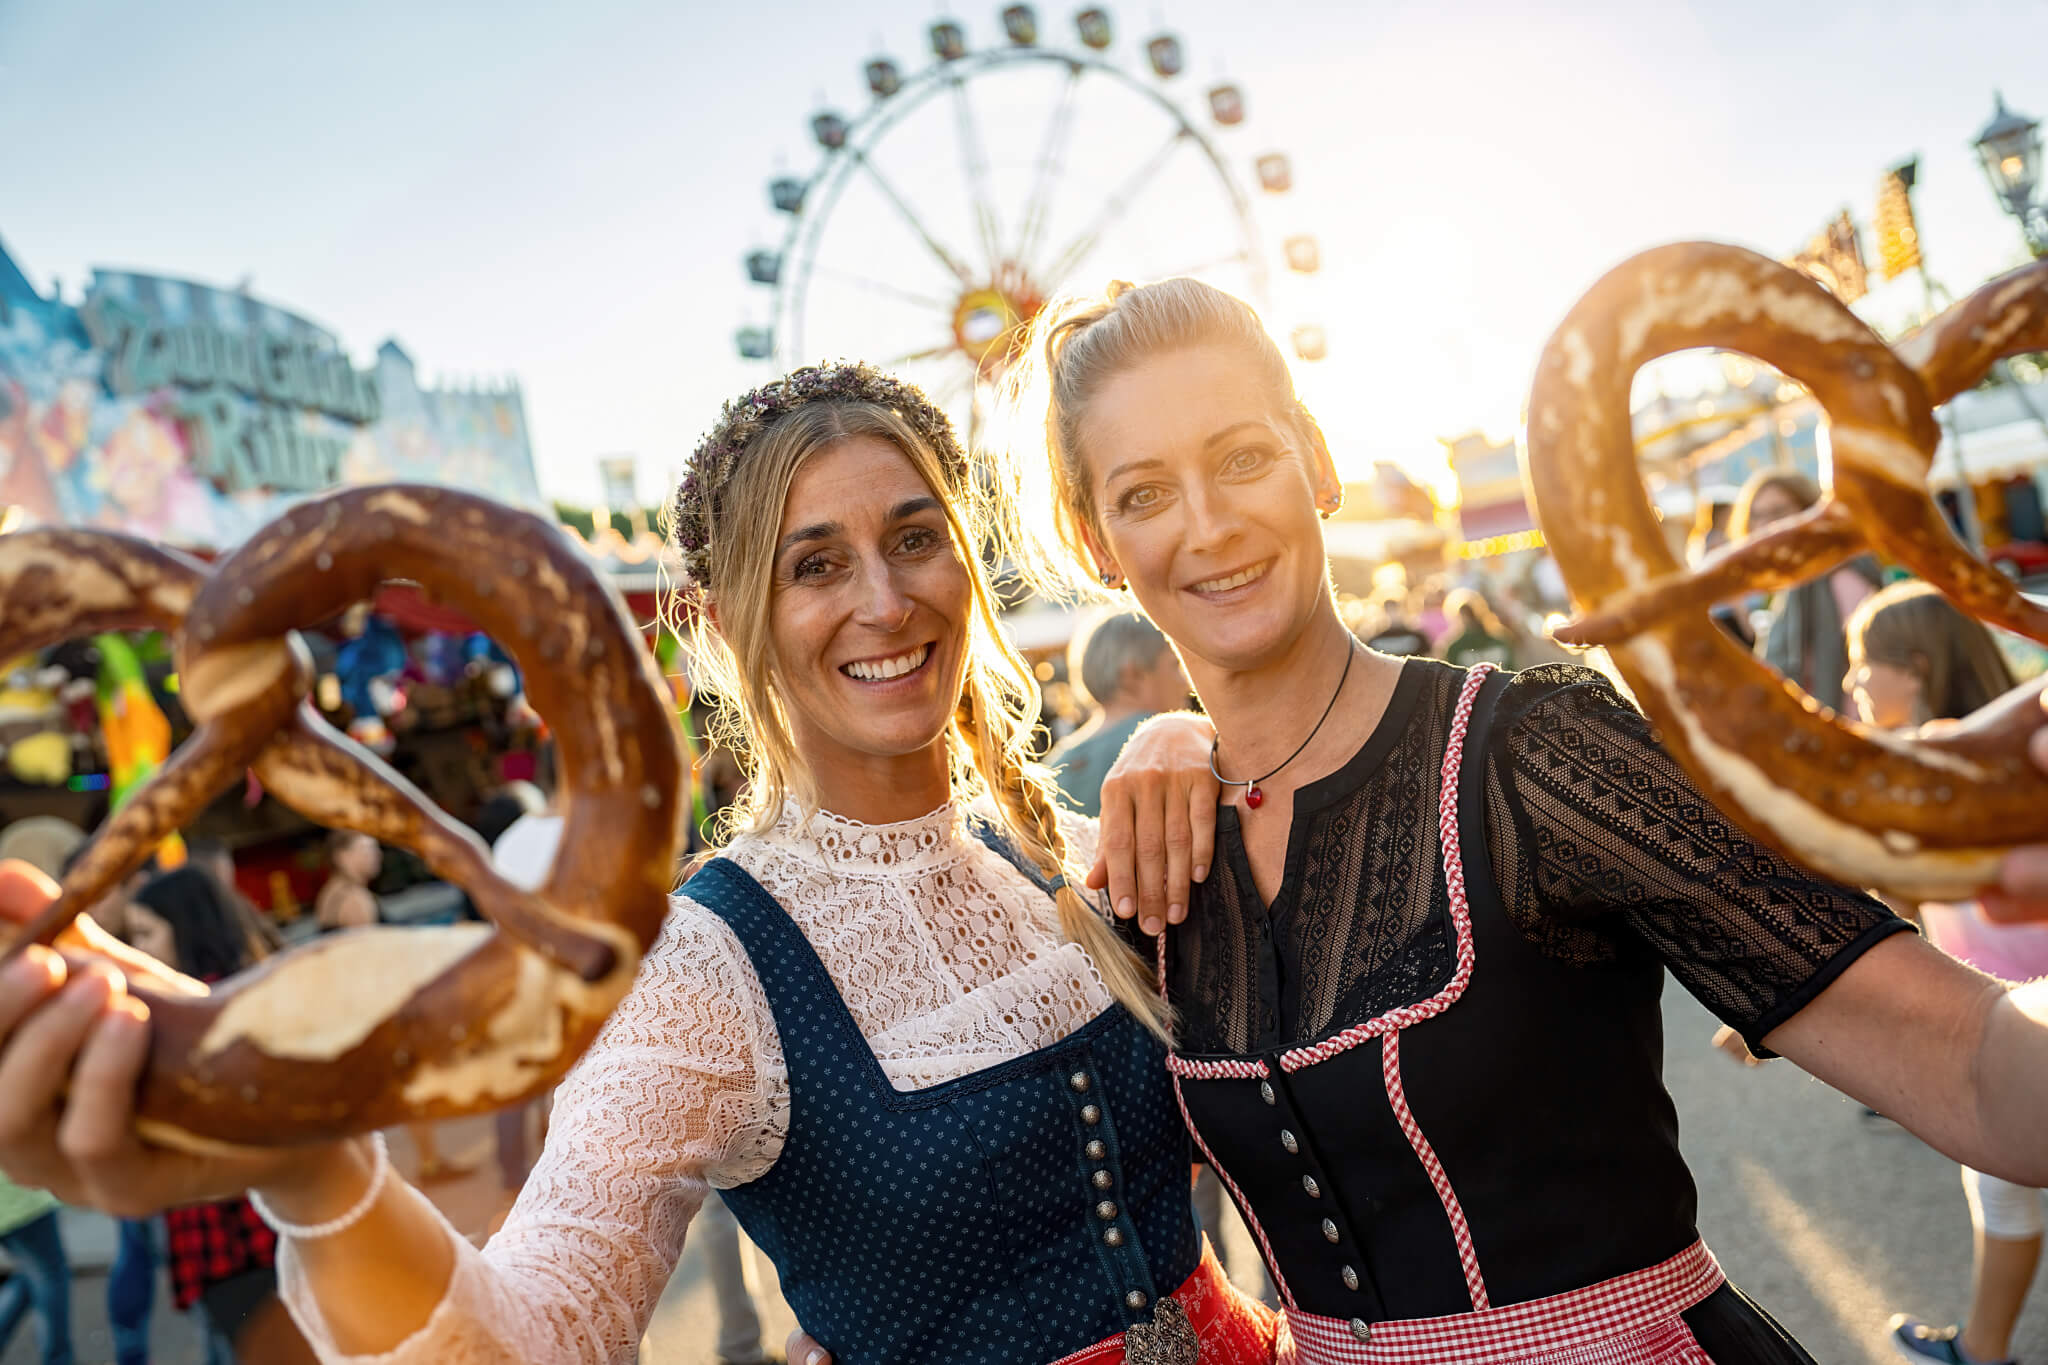 Two women at an Oktoberfest in Germany